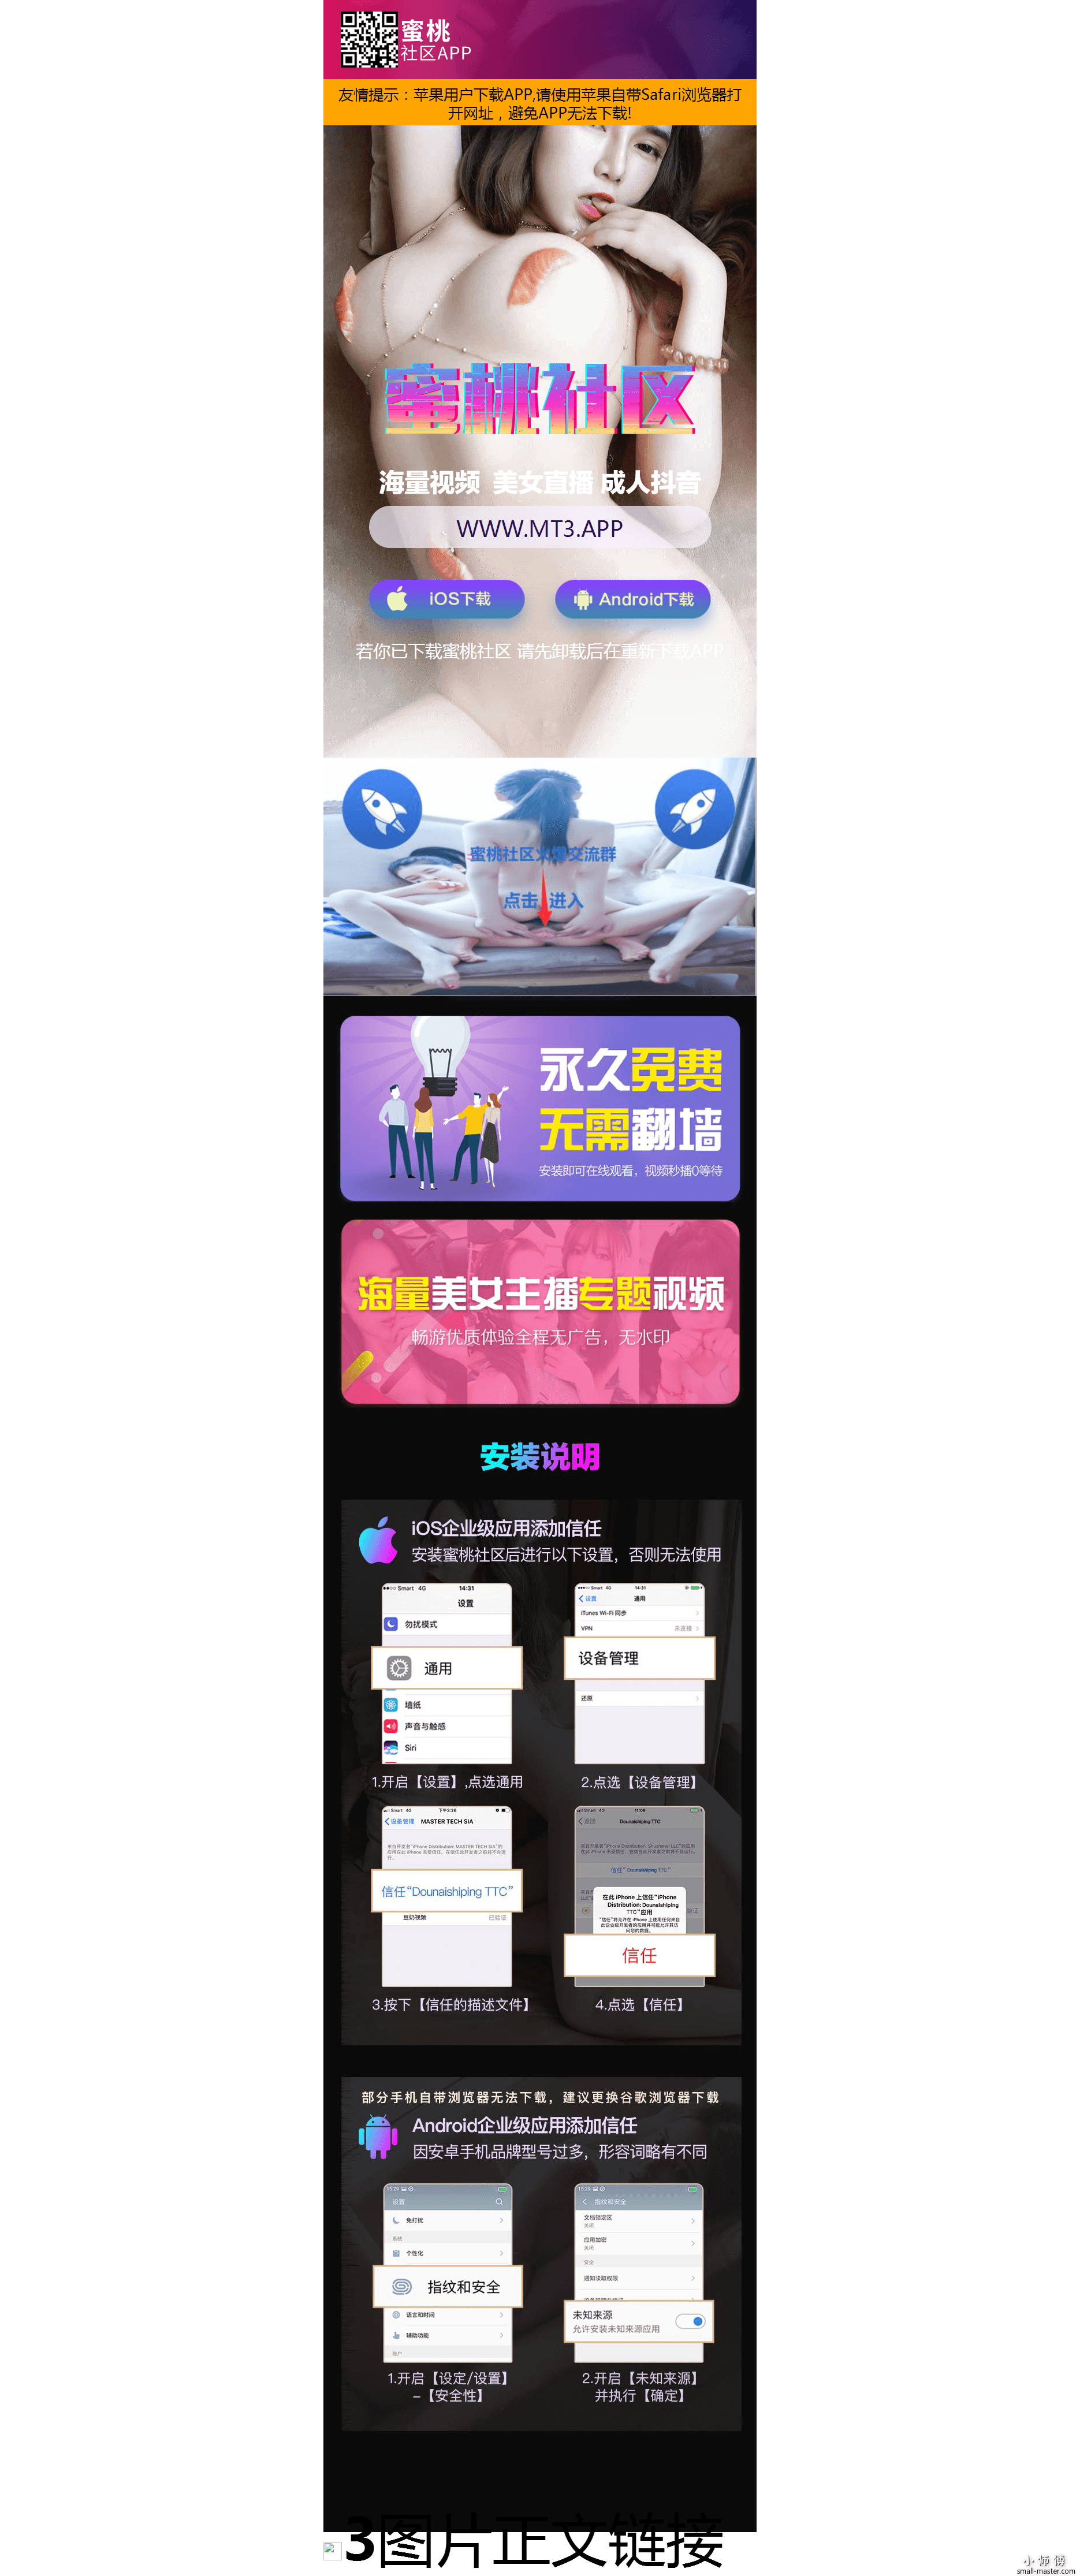 蜜桃社区app-原番茄社区APP官网_20190902104431(1).png